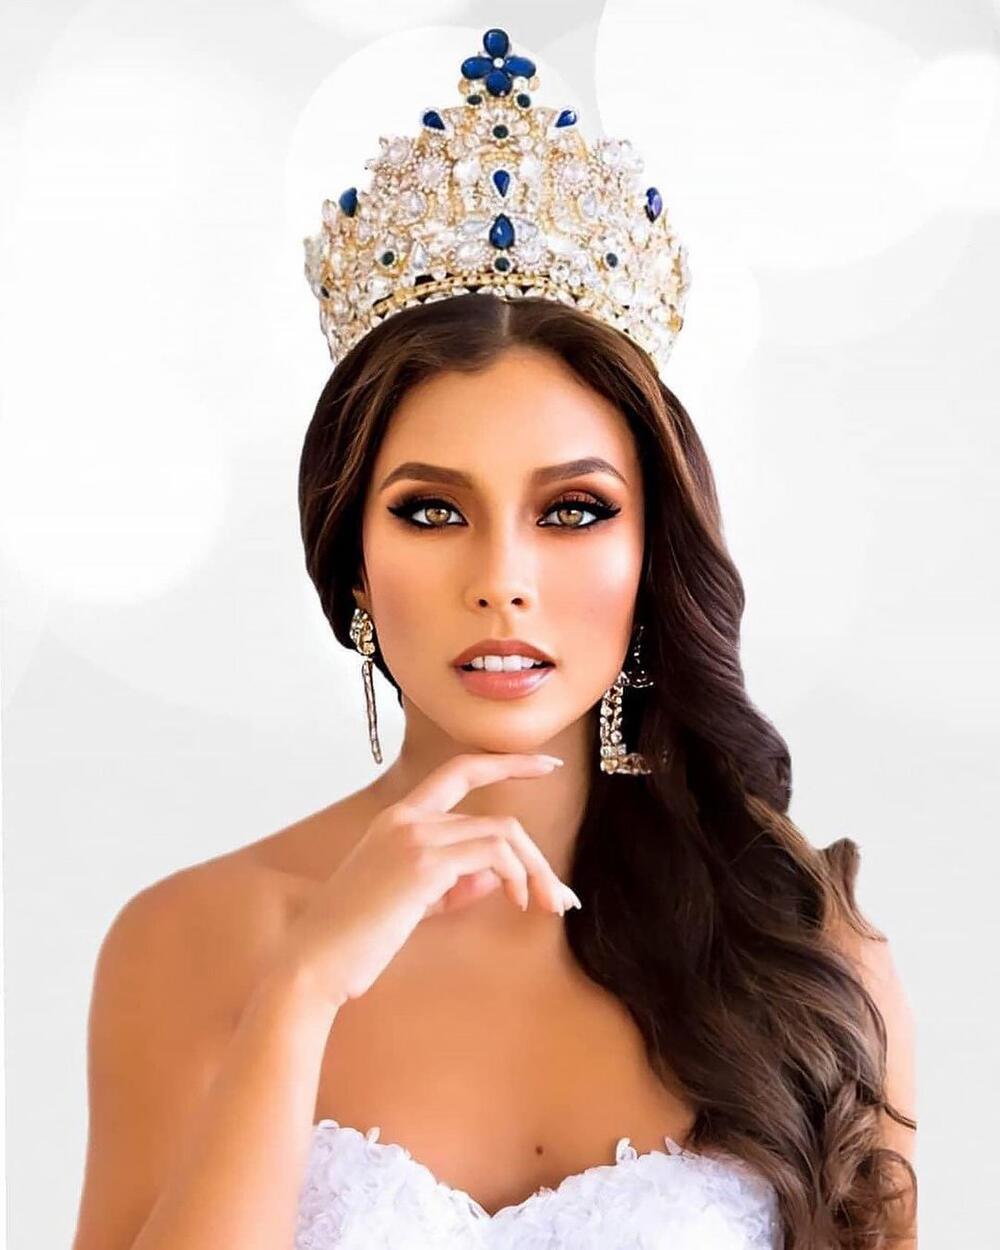 Missosology loại thẳng Khánh Vân ra khỏi Top 20, đưa Philippines Top 5 Miss Universe: Fan phản ứng dữ dội Ảnh 4